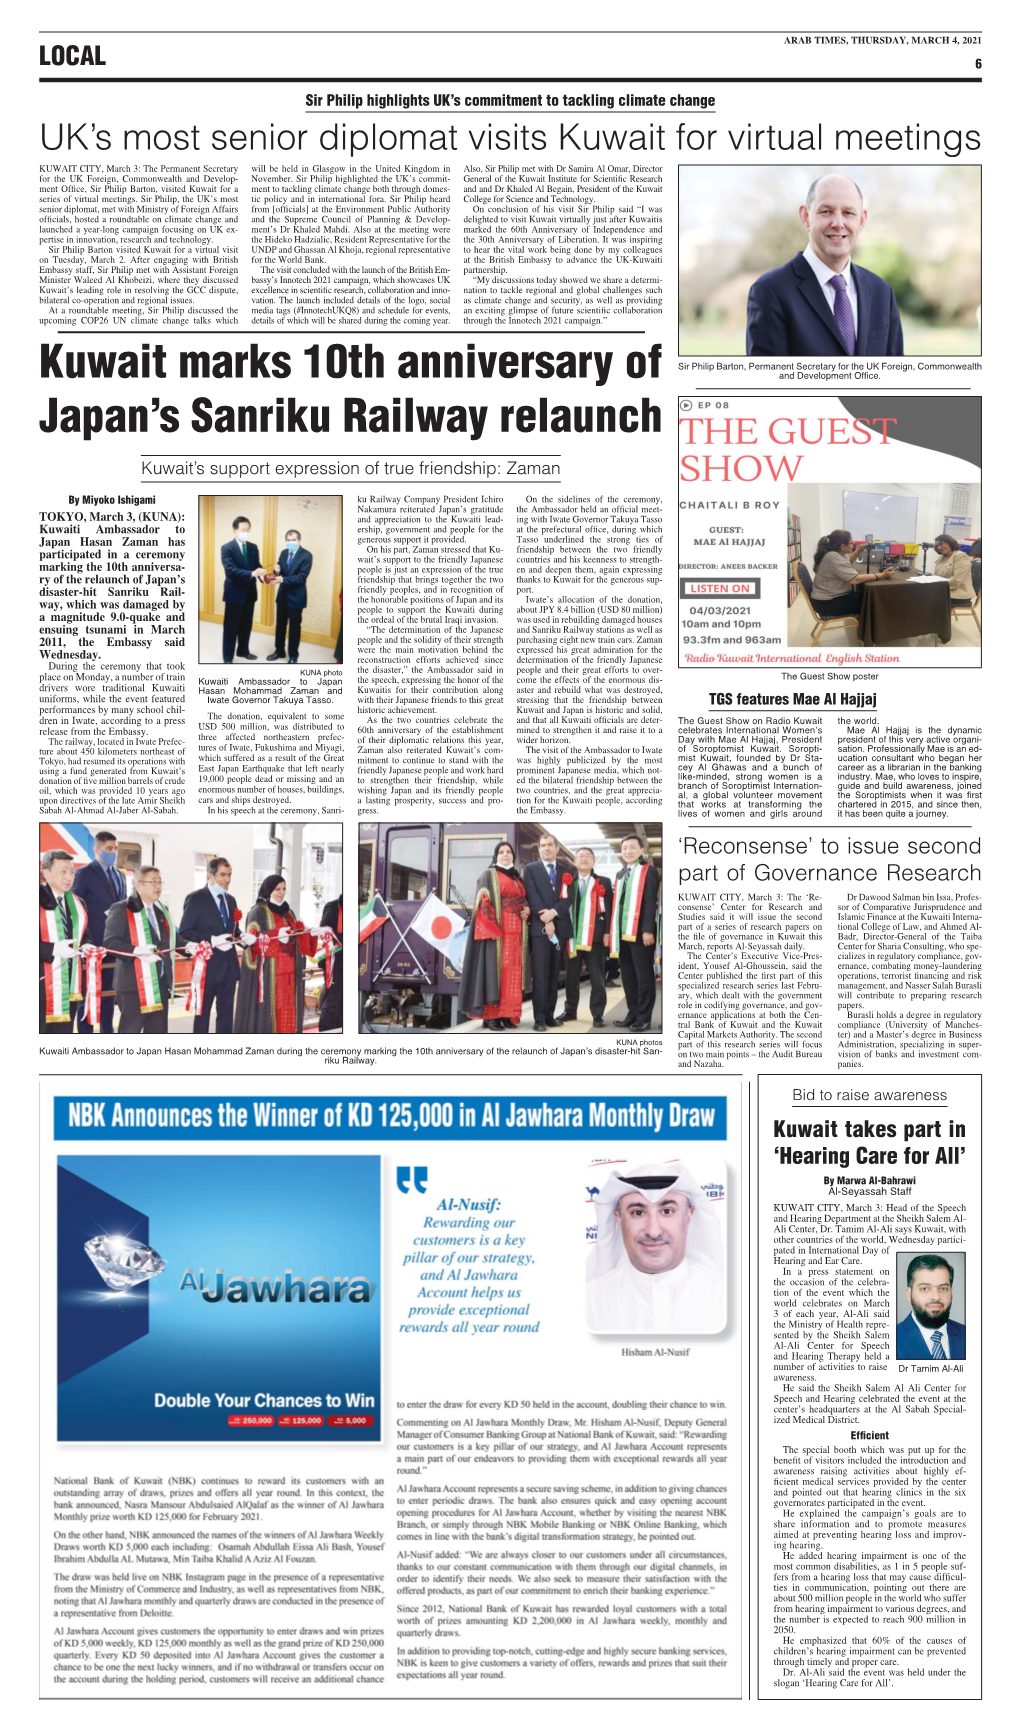 Kuwait Marks 10Th Anniversary of Japan's Sanriku Railway Relaunch